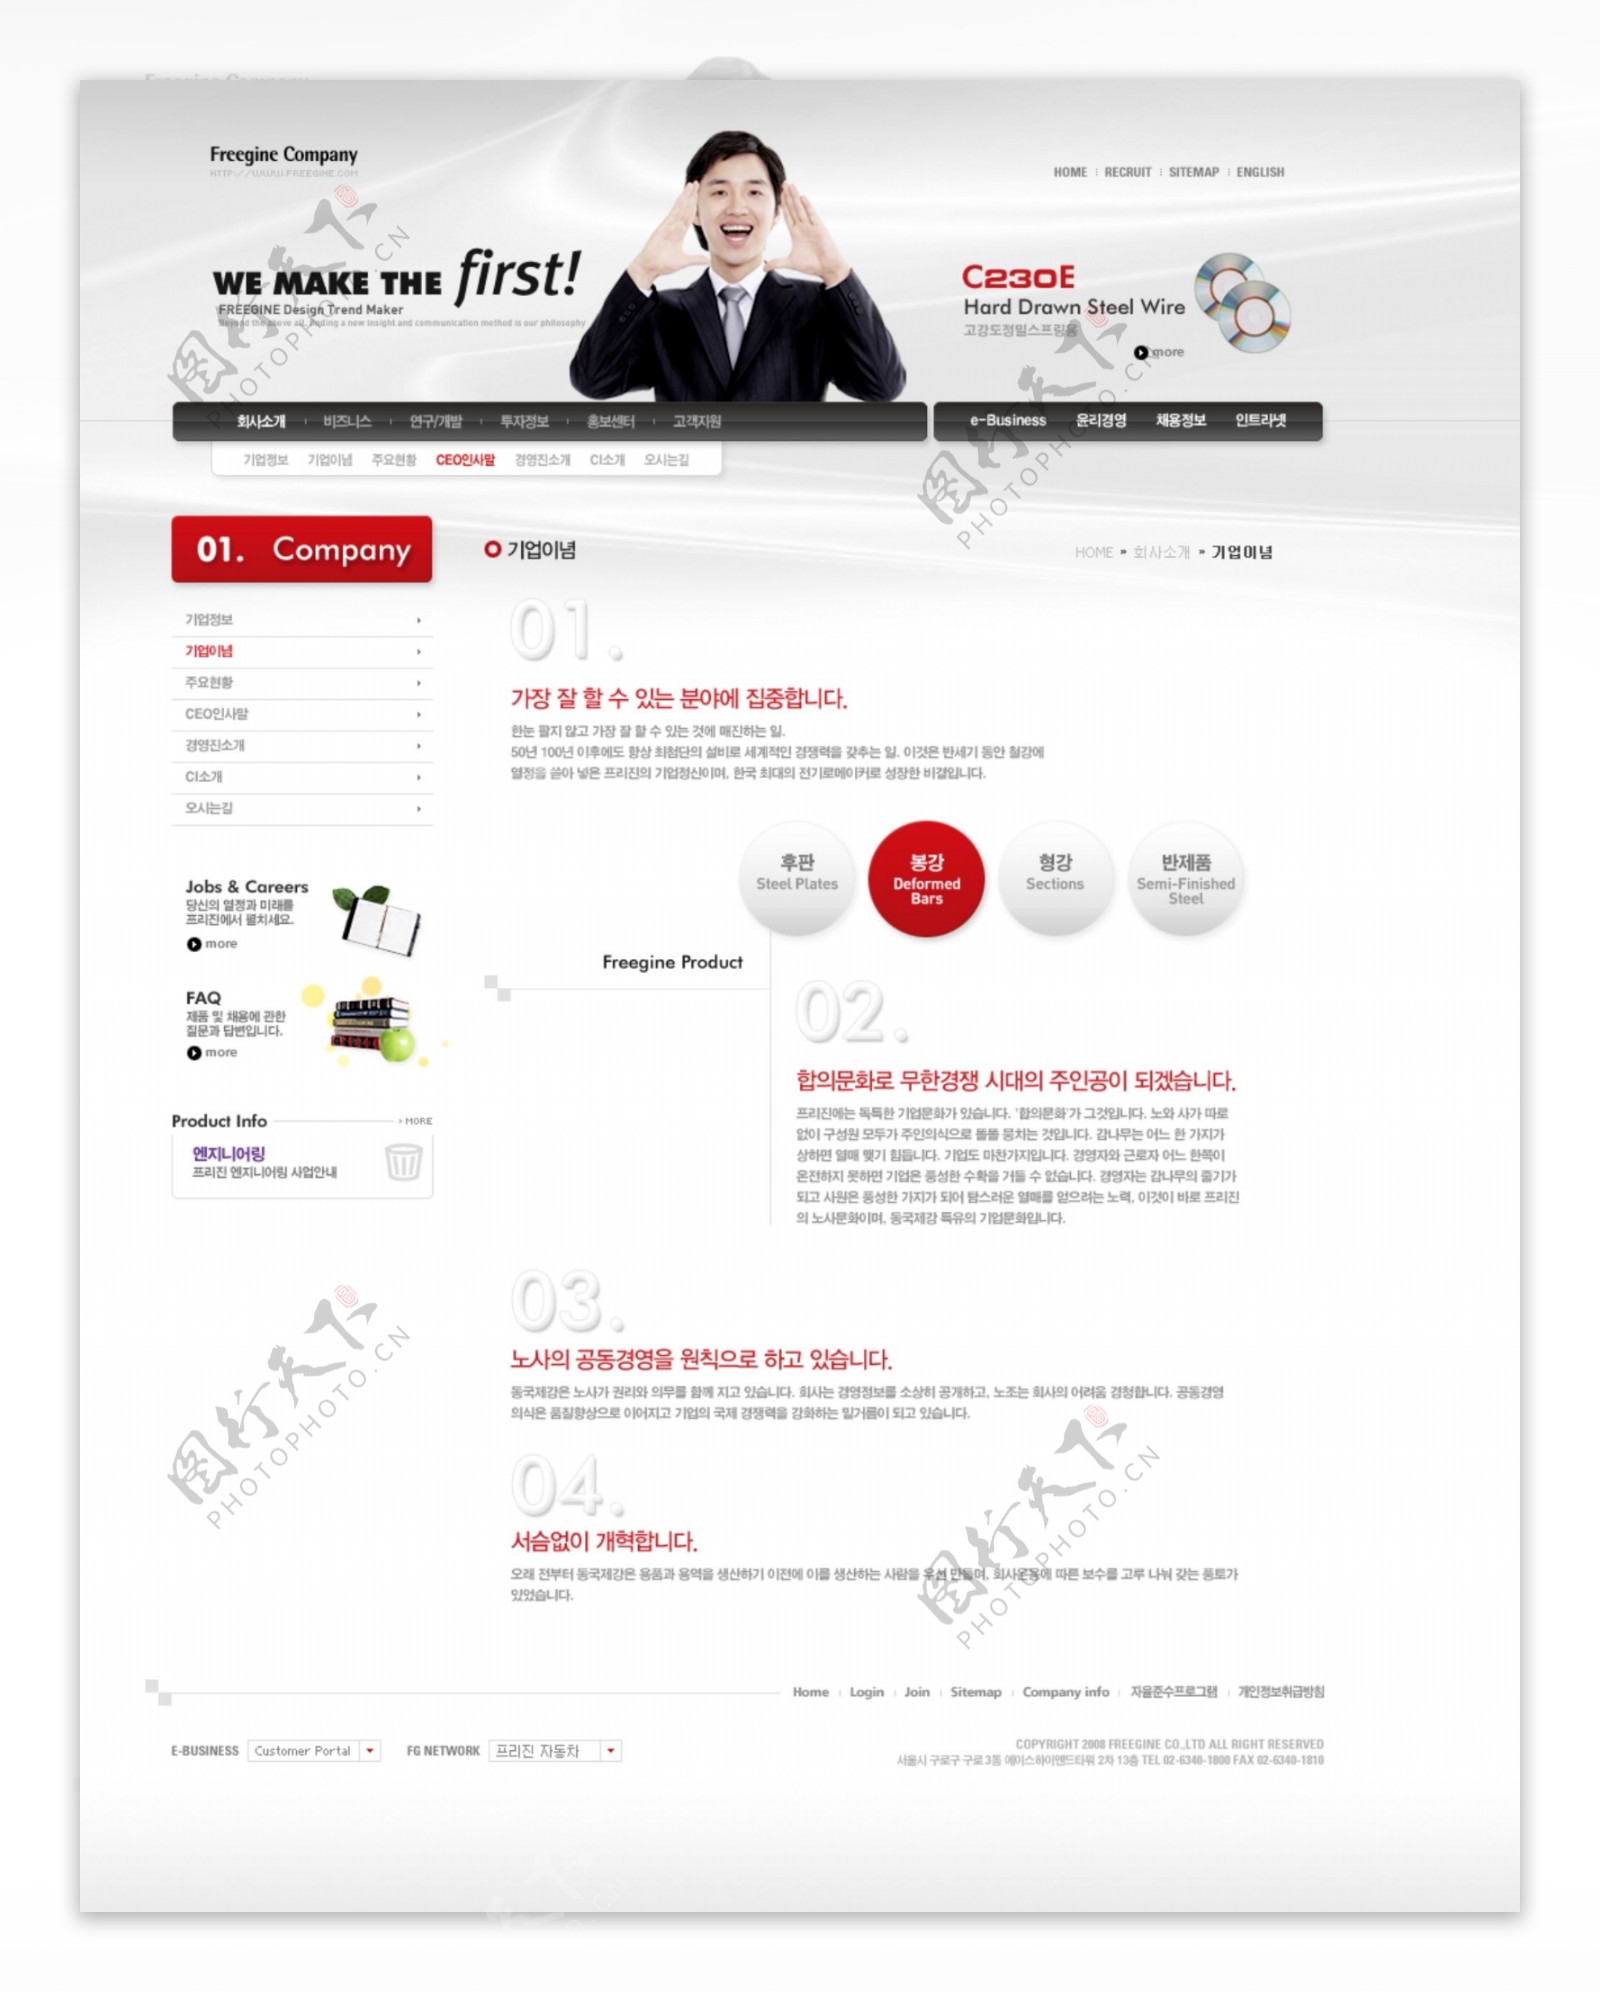 设计白色背景商业网站模板